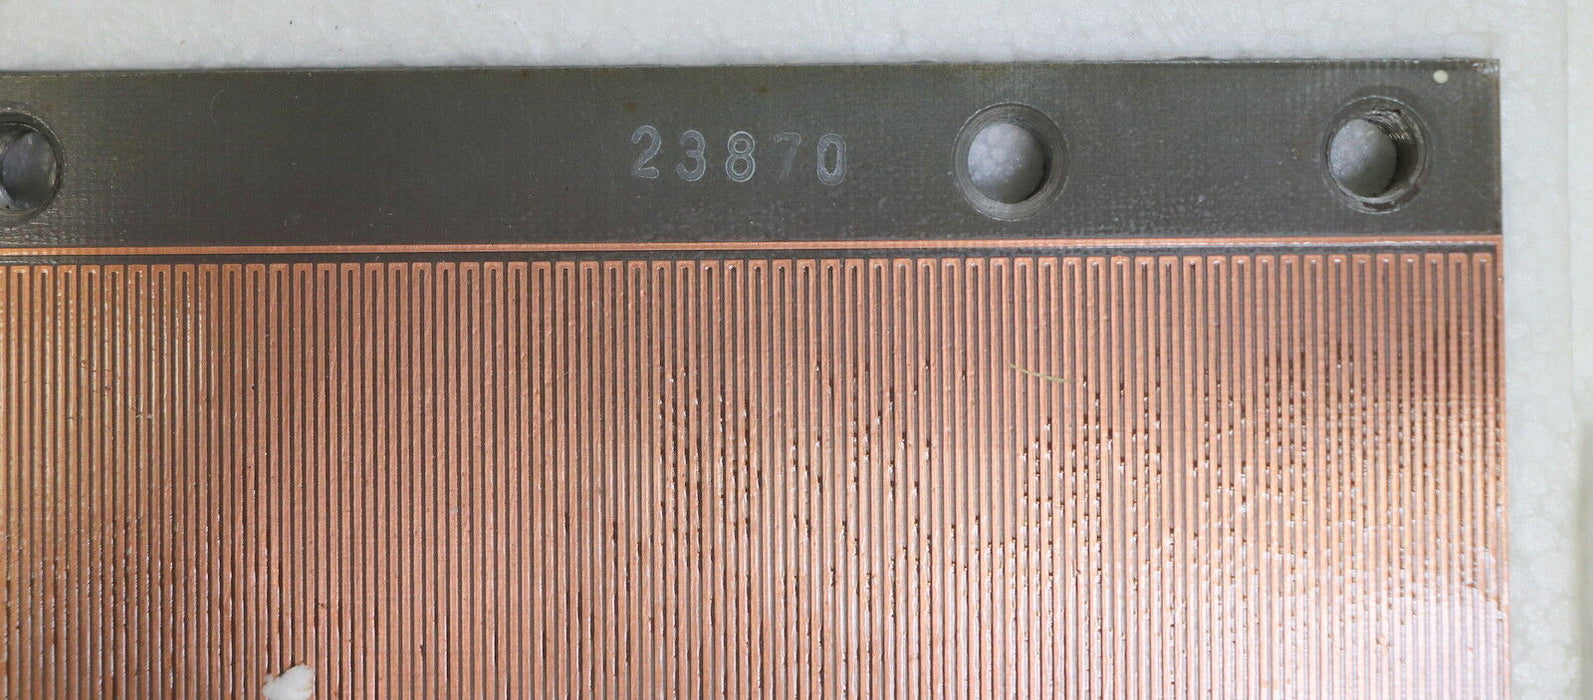 WMW MODUL Linear Inductosyn Länge 250 mm mit Messprotokoll Nr. 23870 - gebraucht